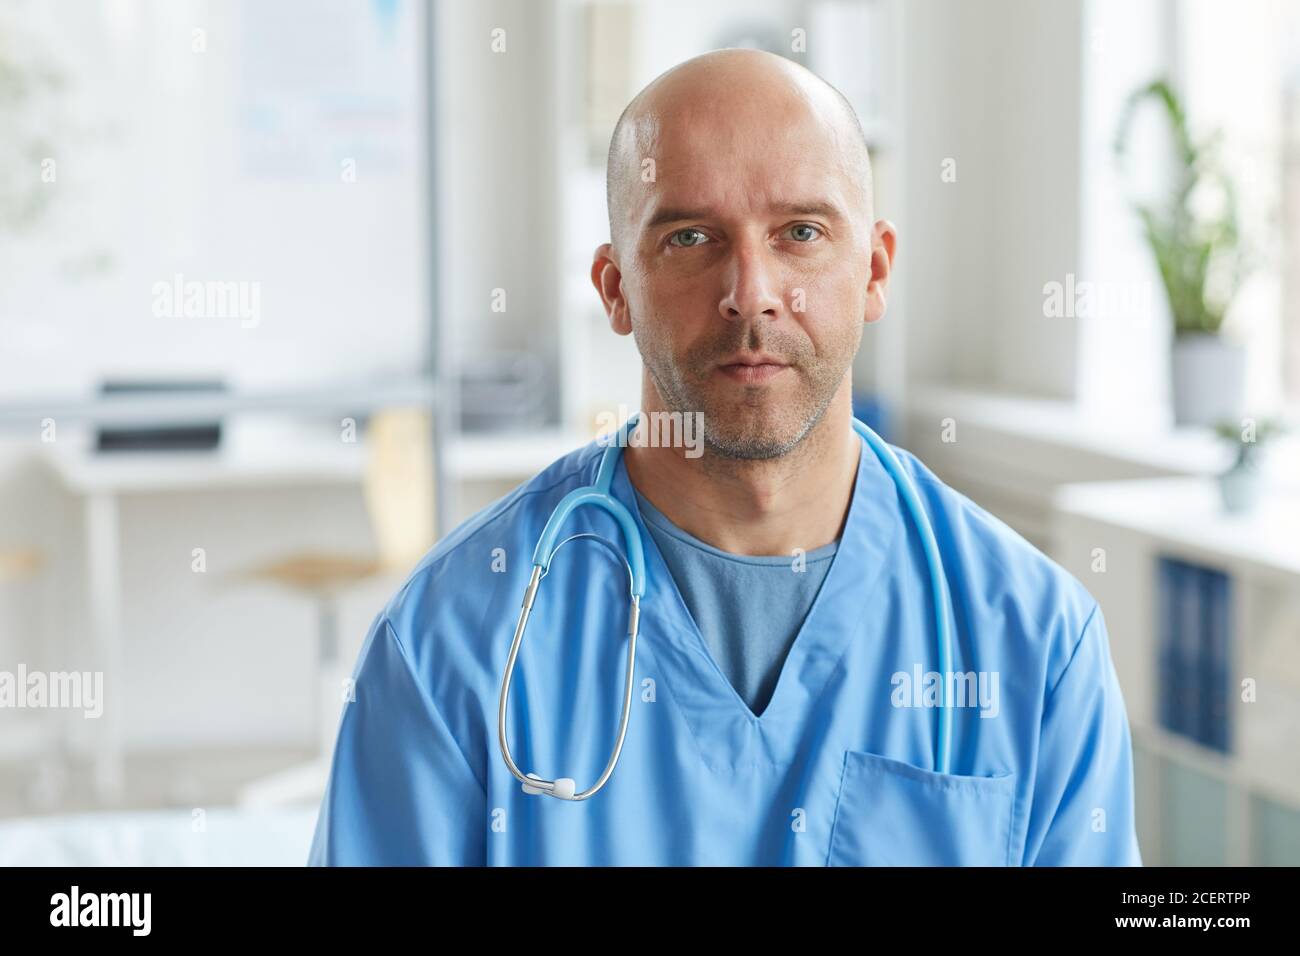 Mittellange Nahaufnahme eines reifen Arztes in blauer Uniform Blick auf die Kamera mit ernsten Gesichtsausdruck Stockfoto